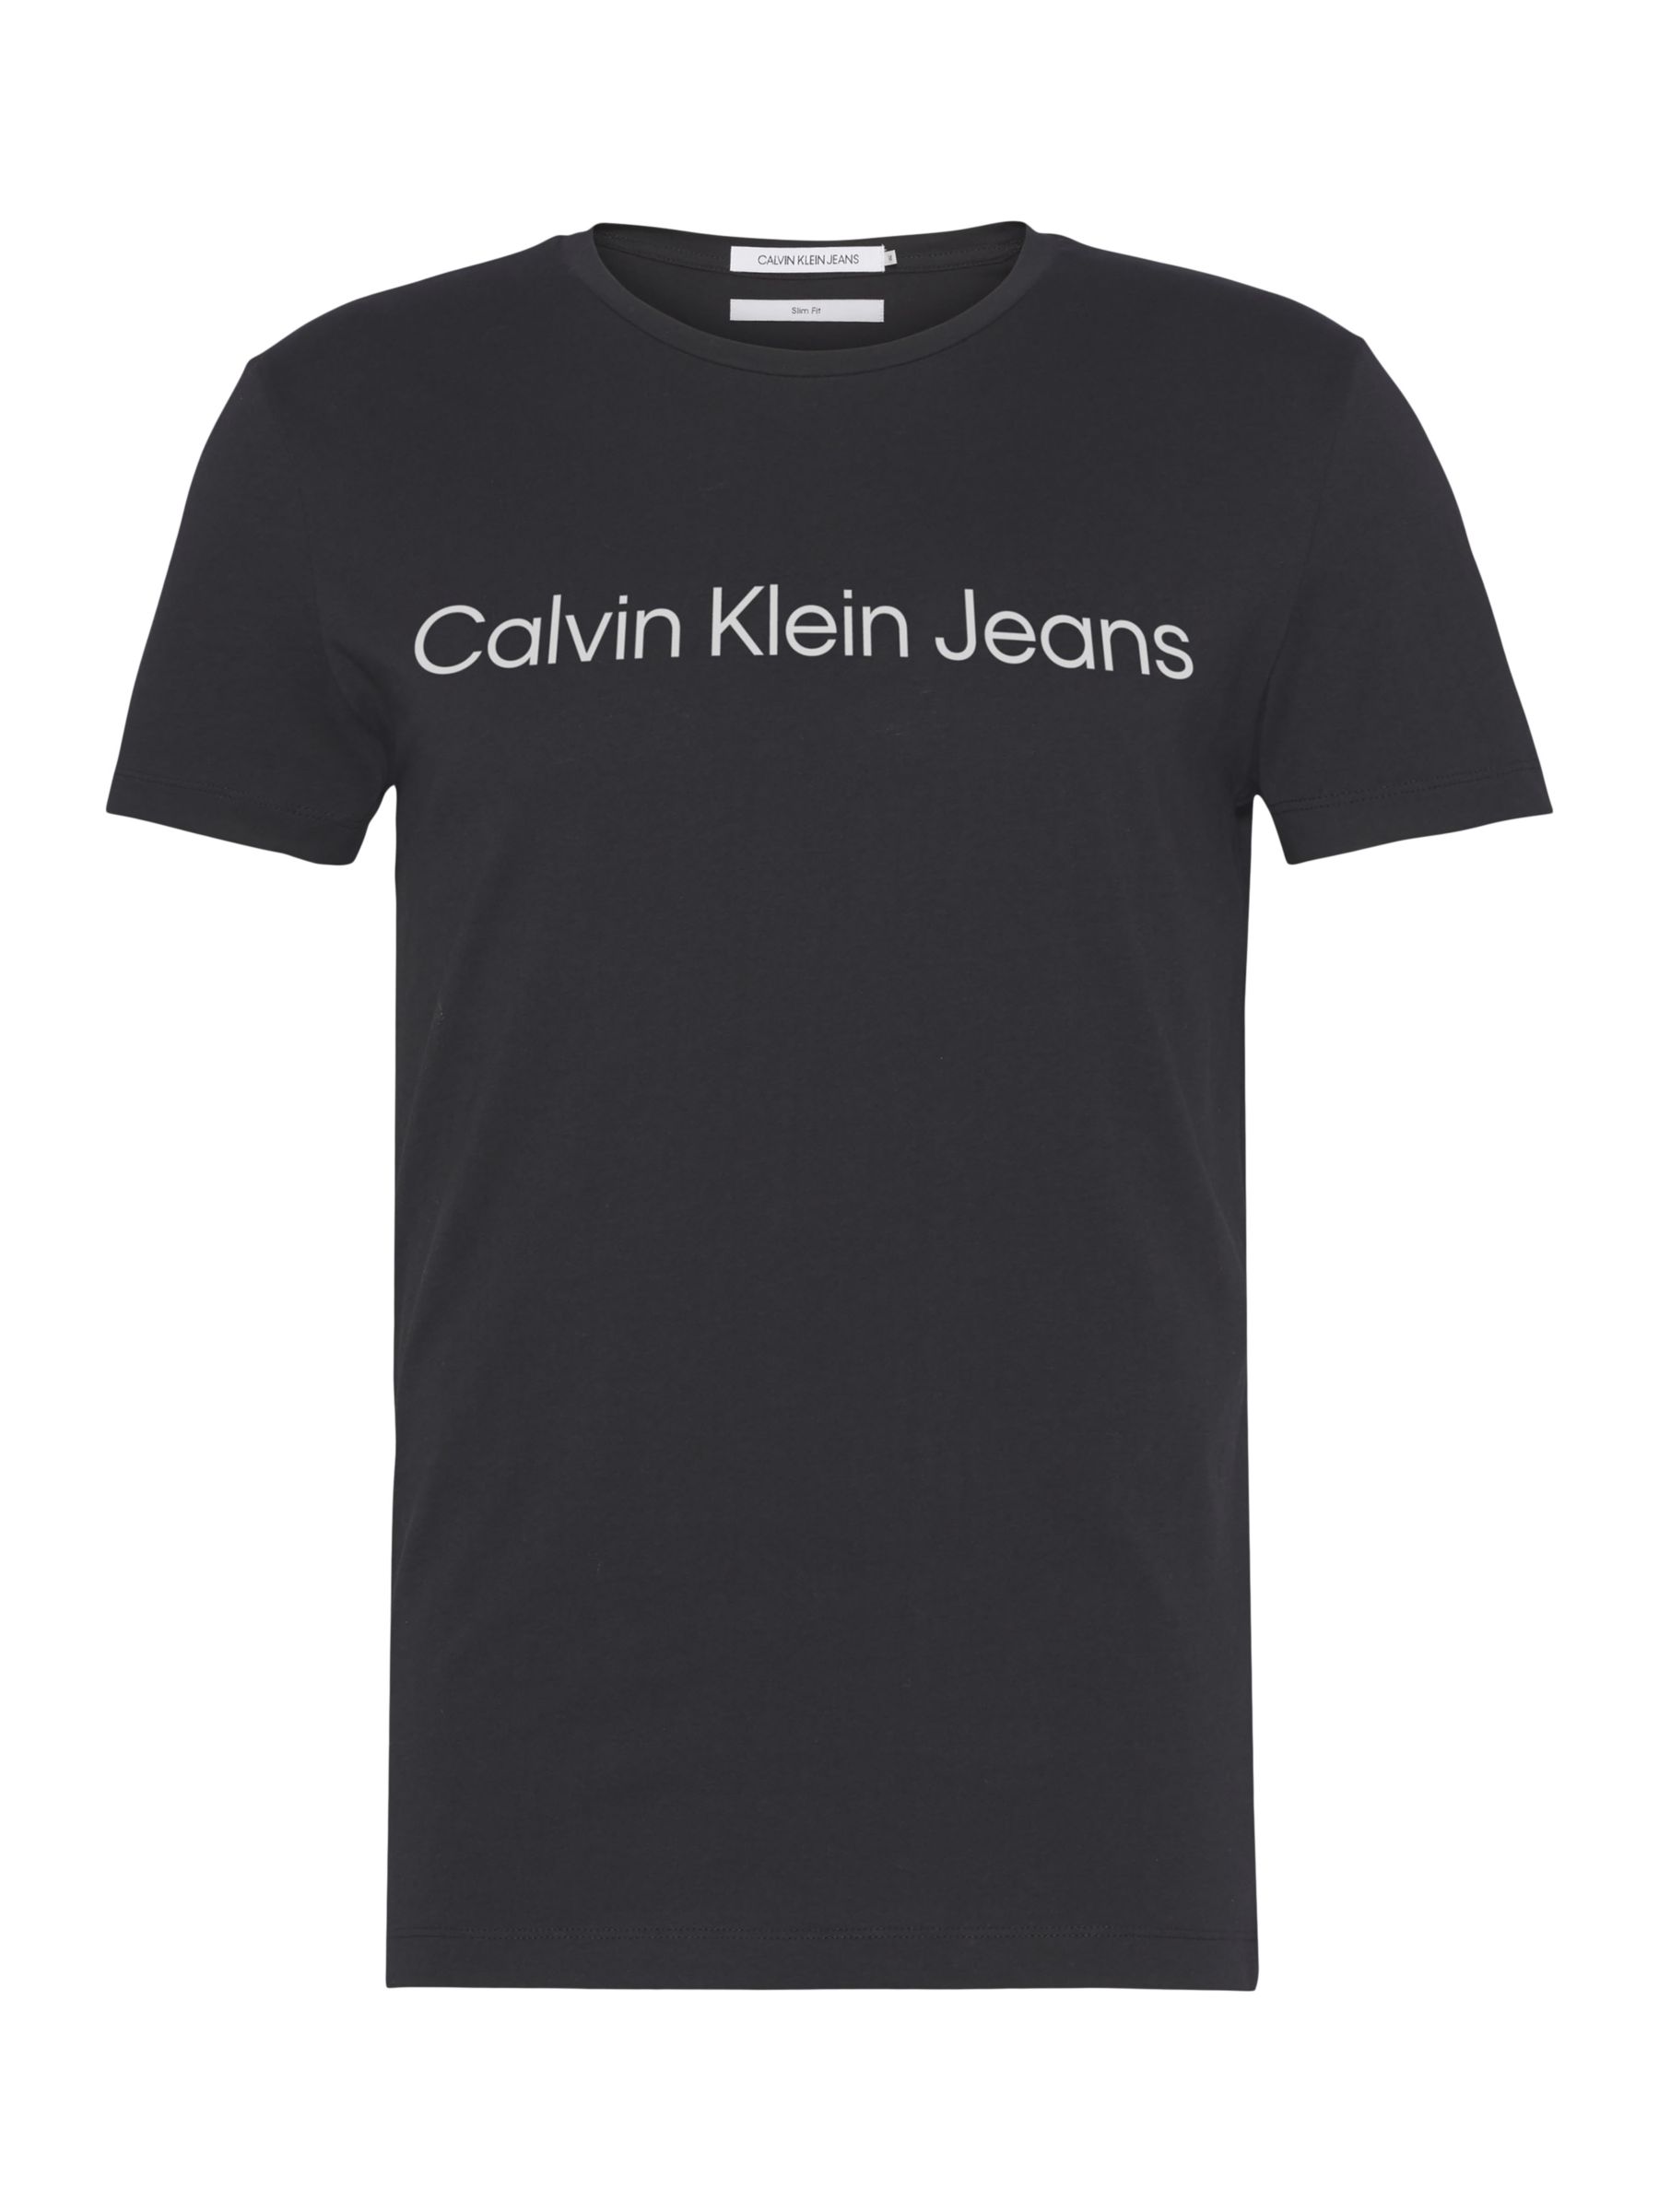 Calvin Klein Jeans Core Logo T-Shirt, Ck Black, XS